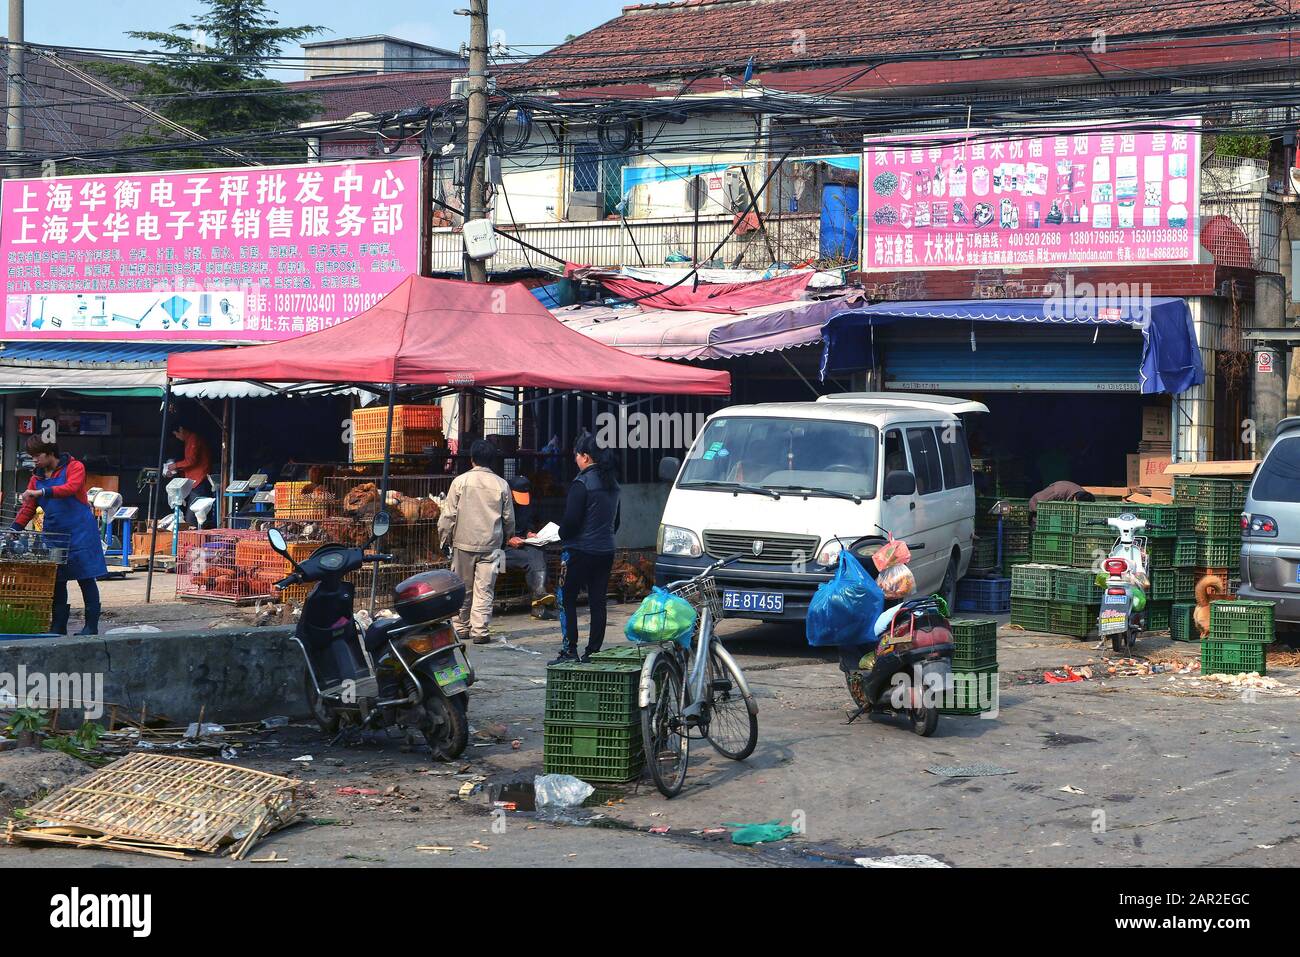 Shanghai, China - 9. November 2014: Menschen auf einem Markt, der lebende Vögel wie Huhn, Gänse und kleinere Vögel verkauft. Stockfoto